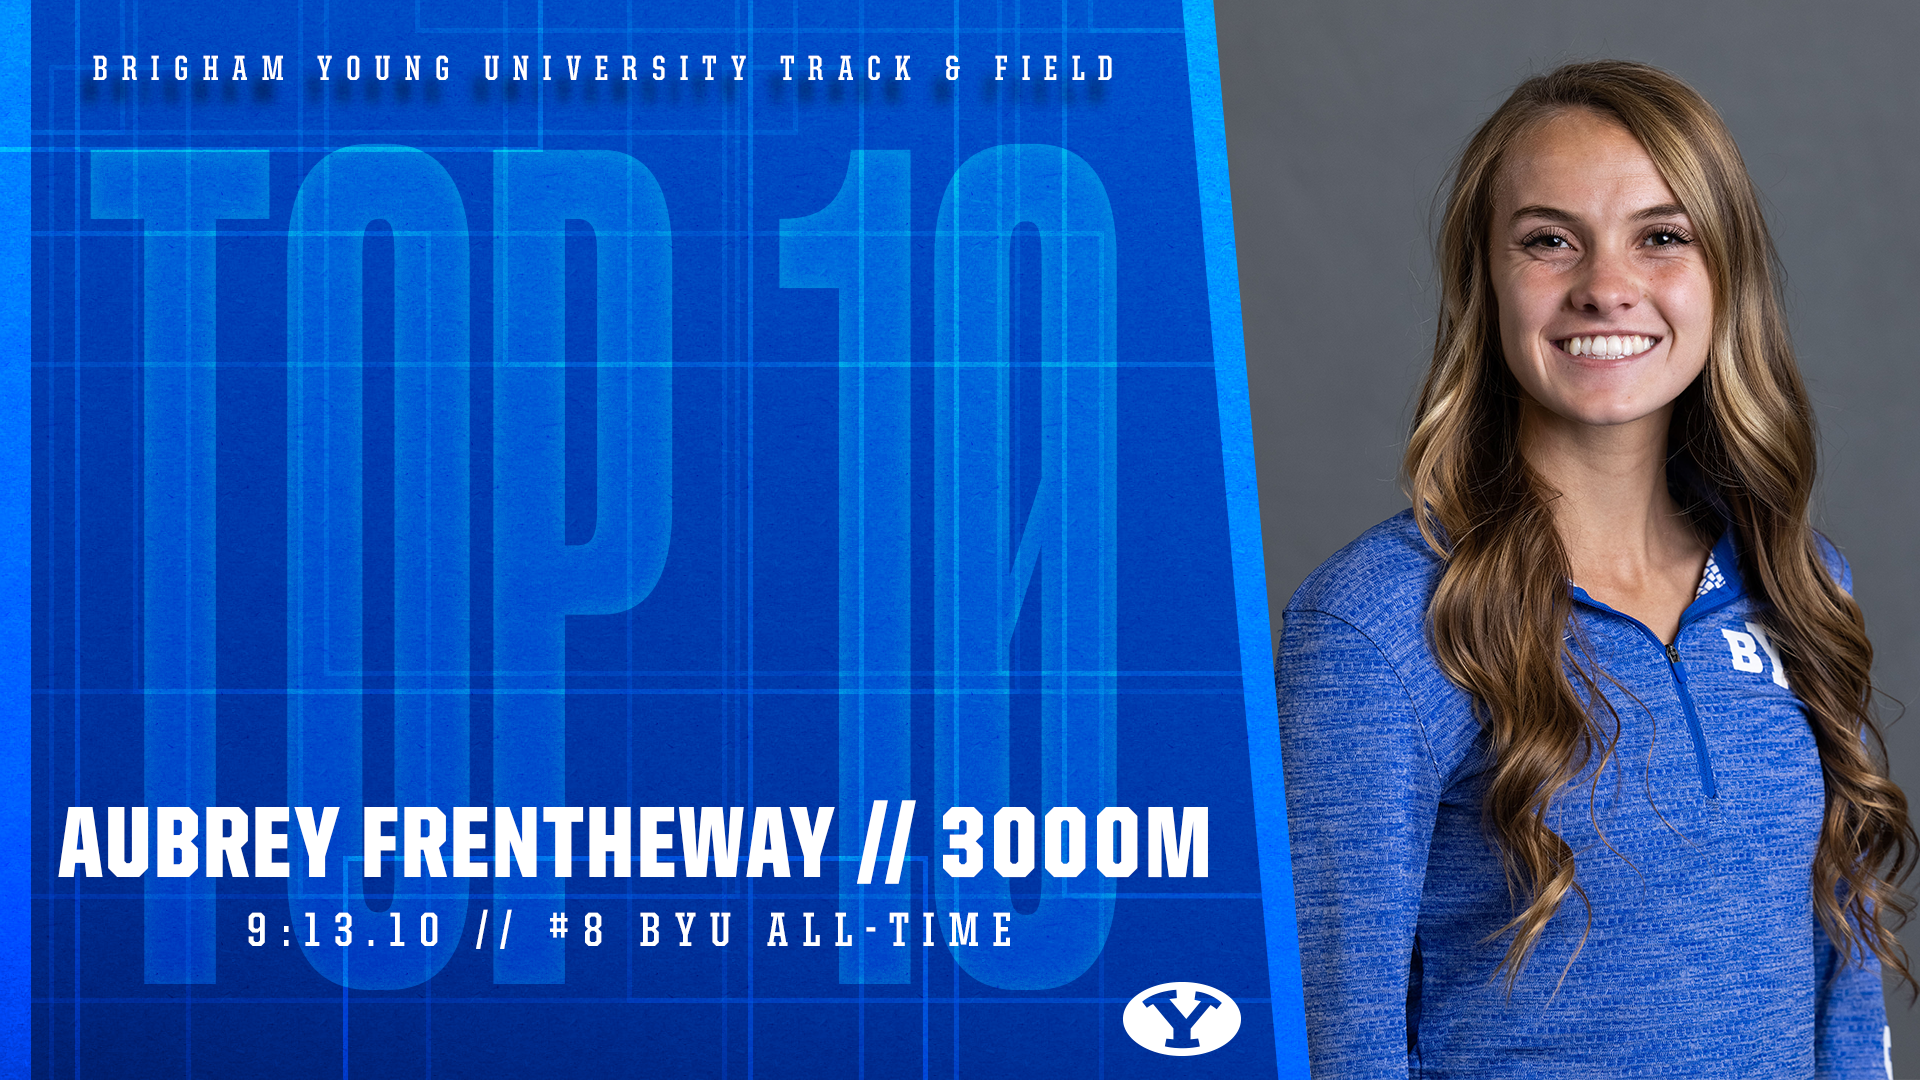 Aubrey Frentheway No. 8 all-time at BYU indoor women's 3000m.